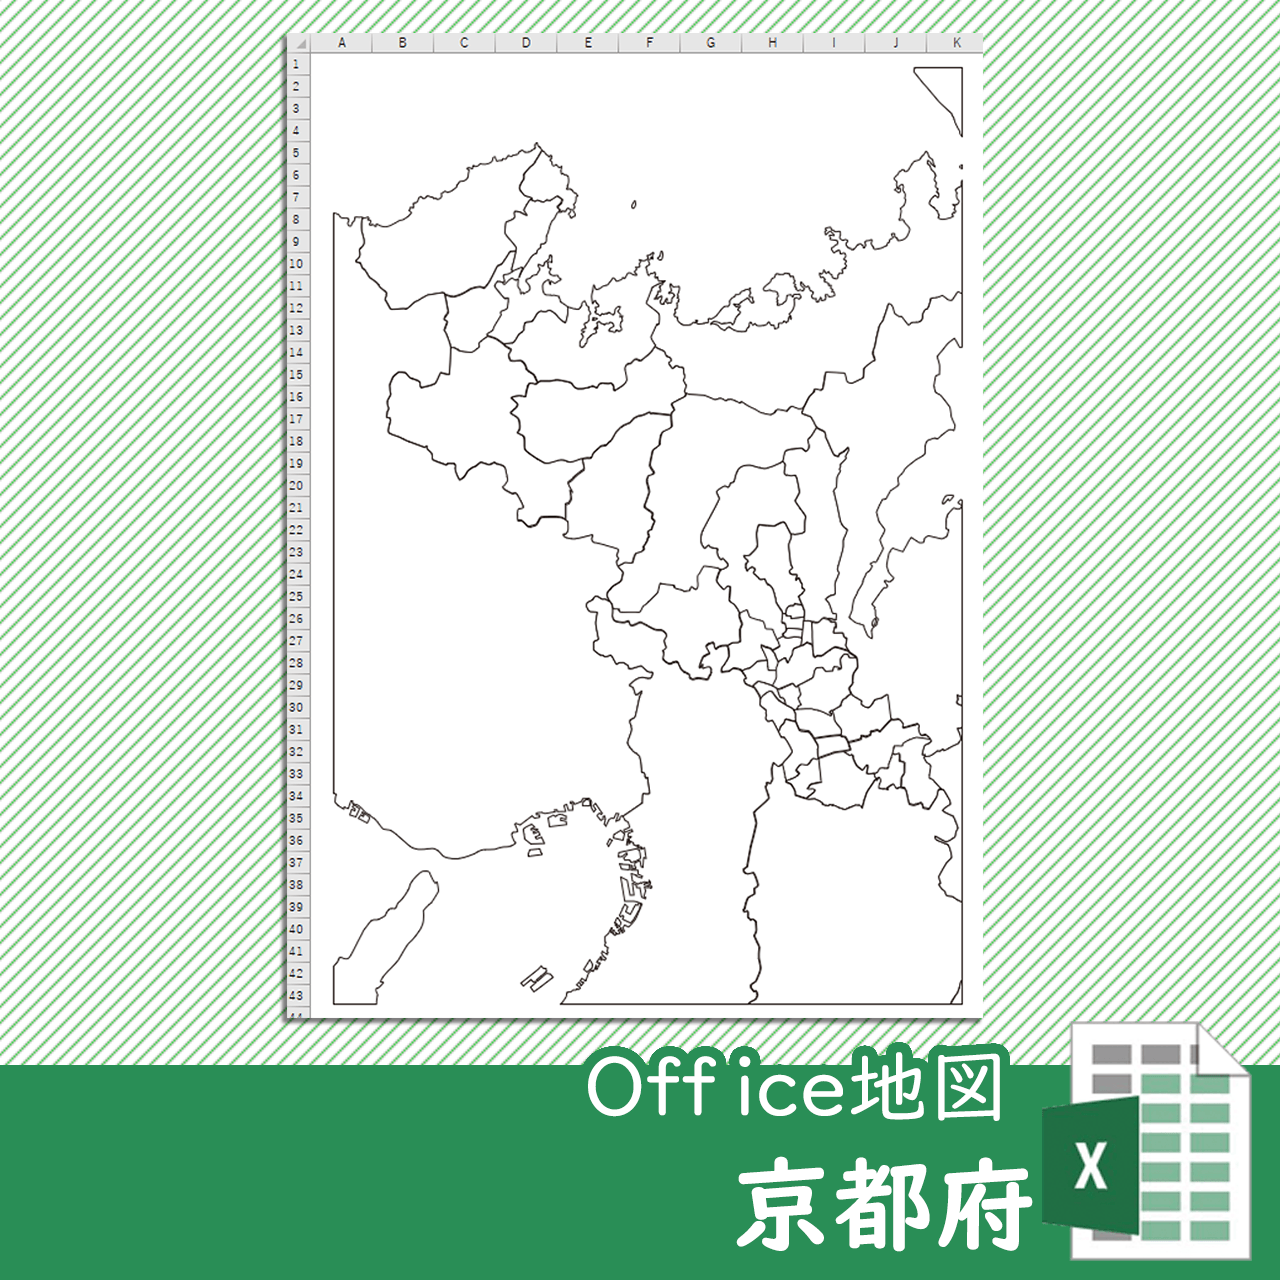 京都府のOffice地図のサムネイル